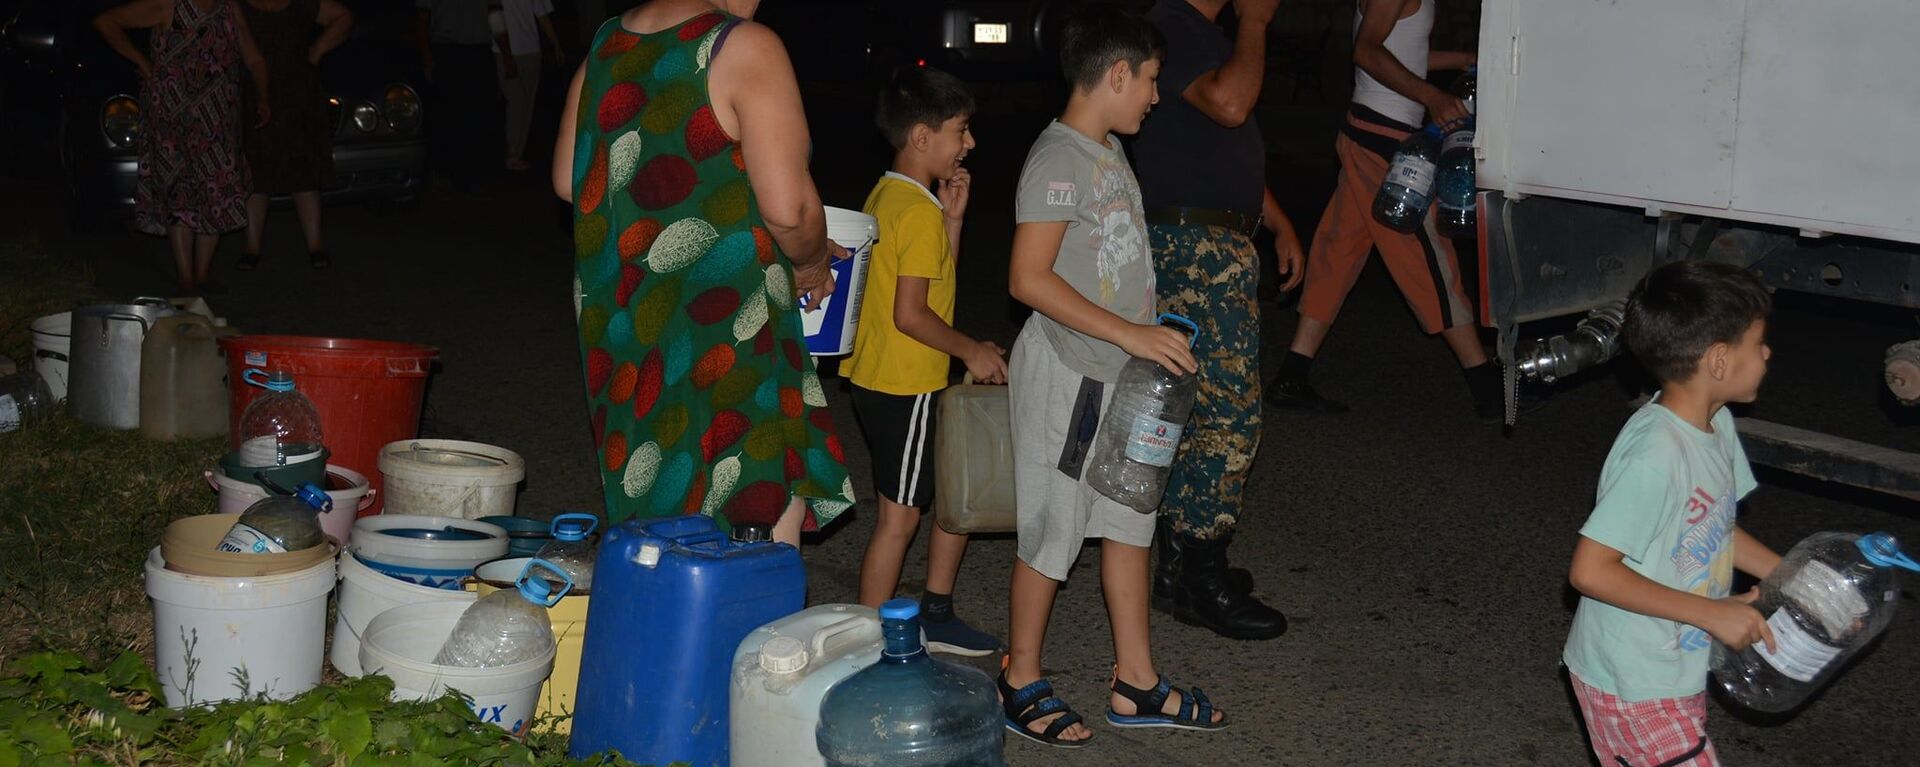 МЧС Карабаха помогает жителям с питьевой водой - Sputnik Արմենիա, 1920, 05.09.2021